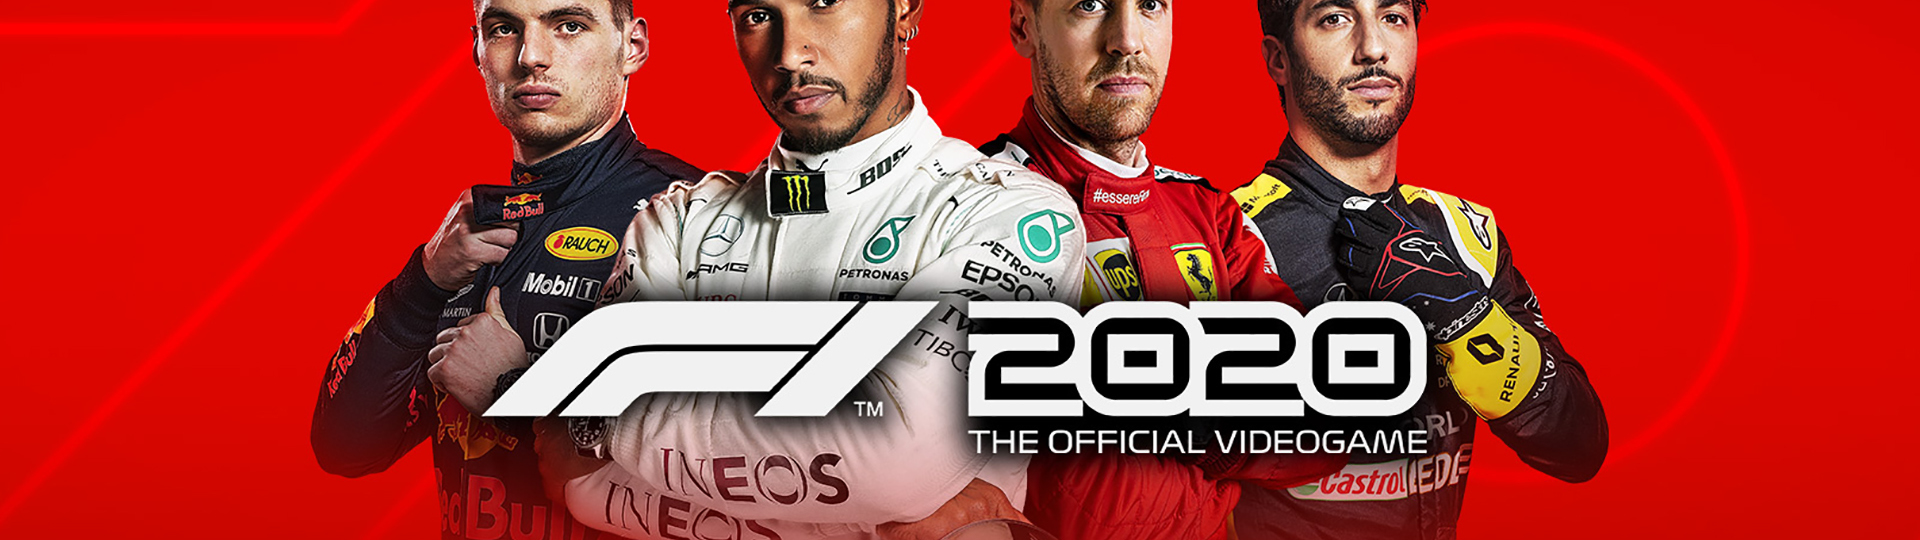 F1 2020 licencovanou hrou na motivy sezóny, která se neuskuteční | Novinky